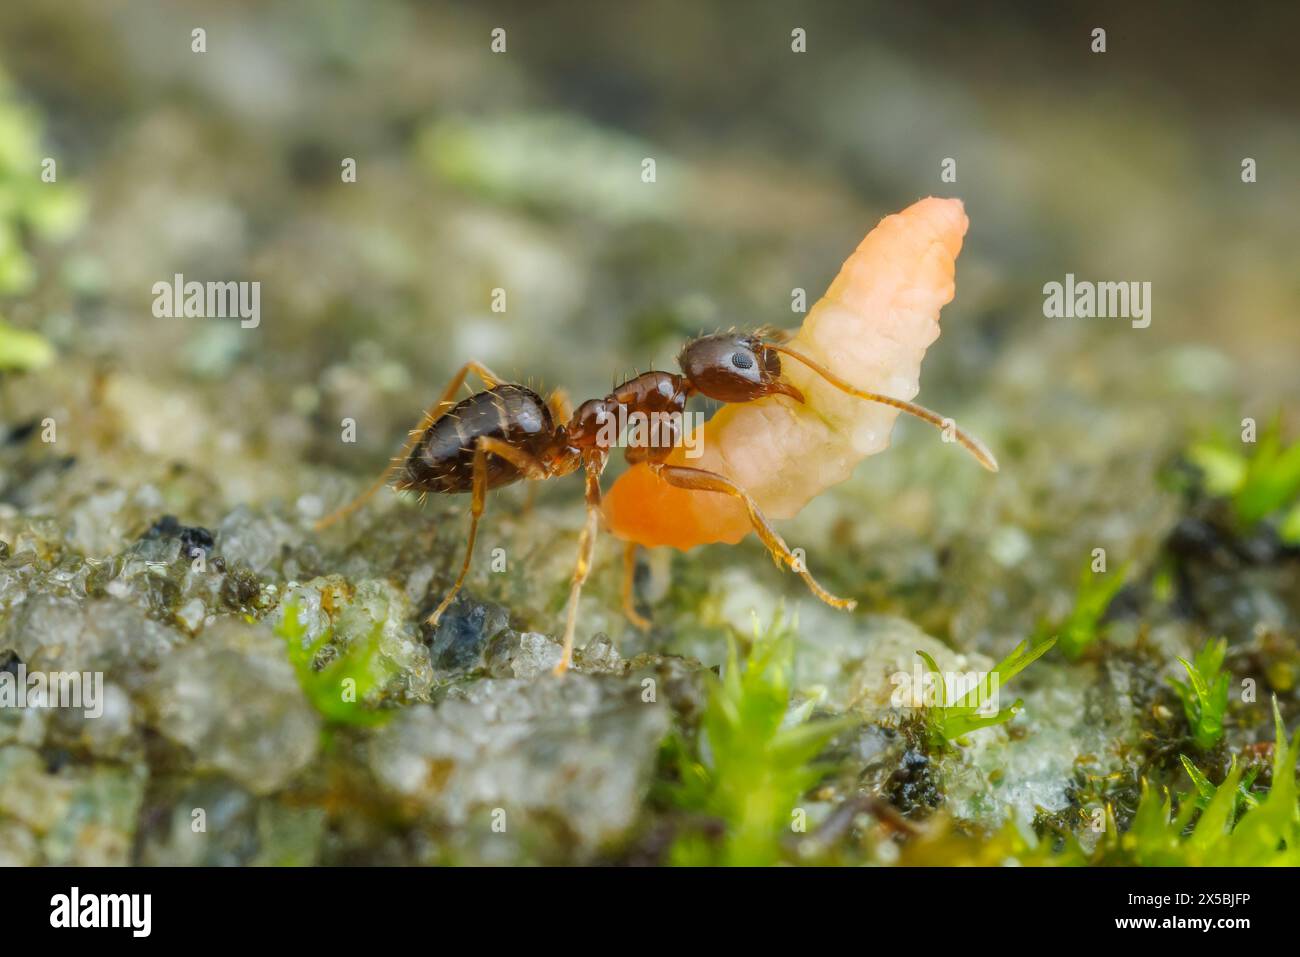 Un ouvrier de fourmi folle (Nylanderia flavipes) ramène une larve d'insecte récupérée à son nid. Banque D'Images